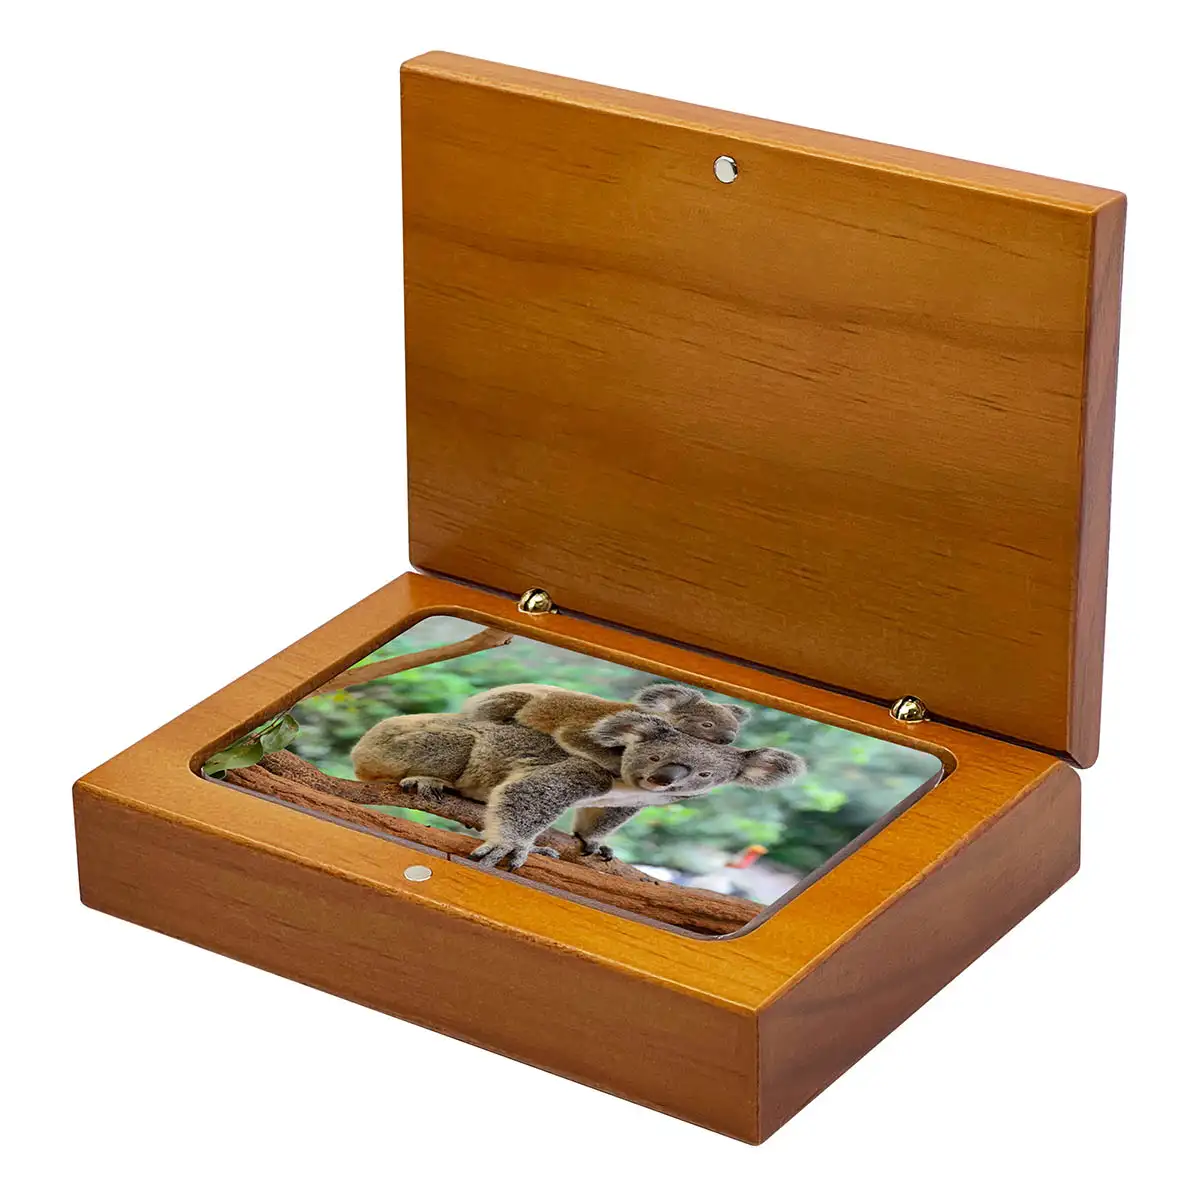 Scatola di legno per carte da gioco (formato carta 58x88mm)